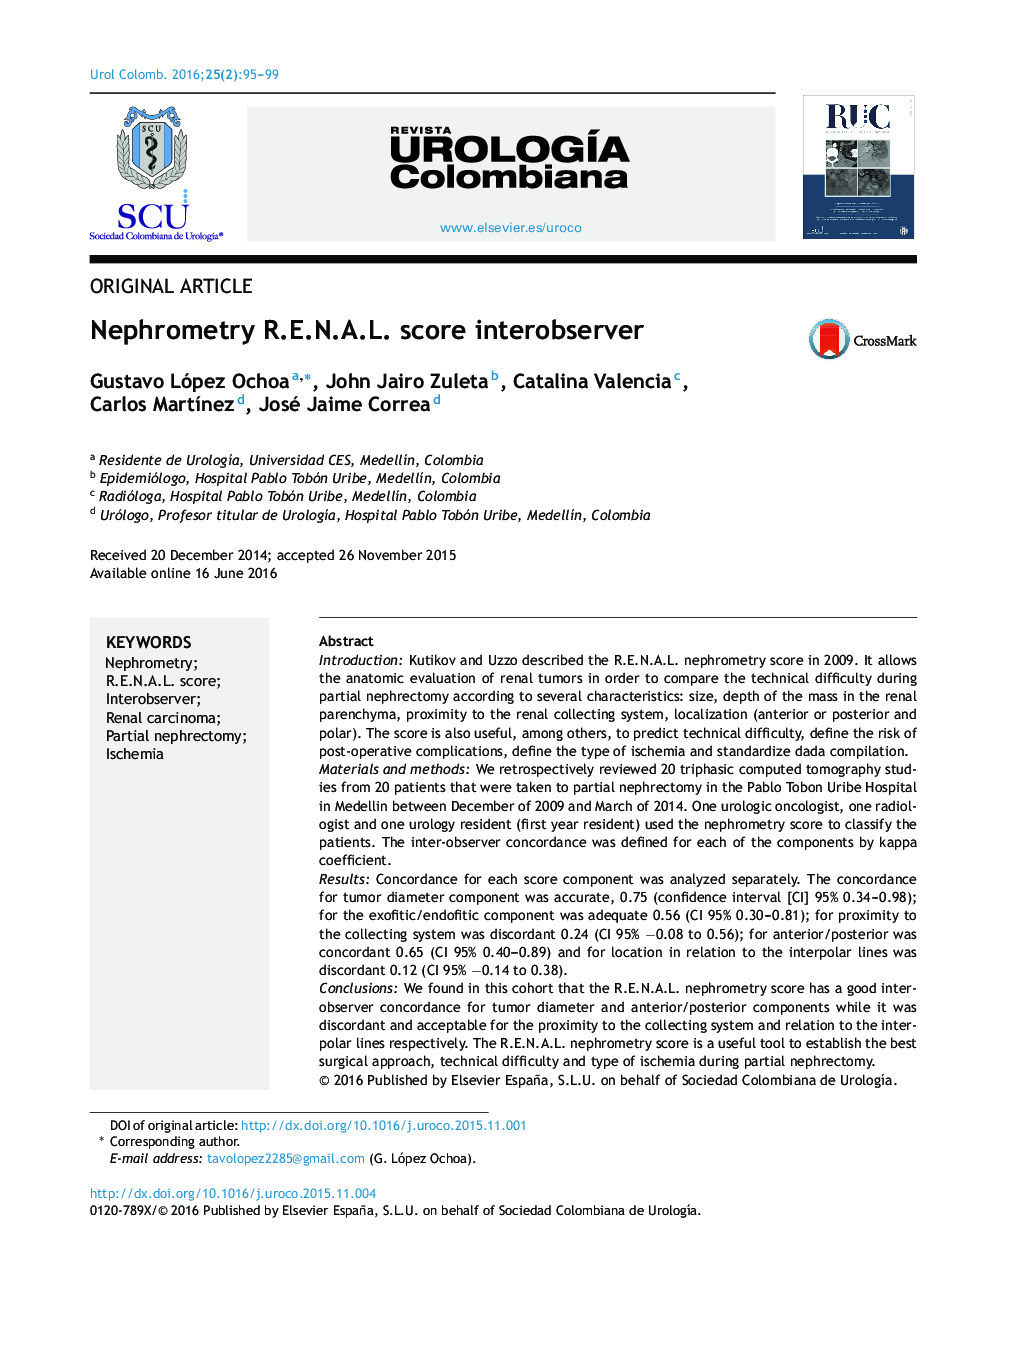 Nephrometry R.E.N.A.L. score interobserver